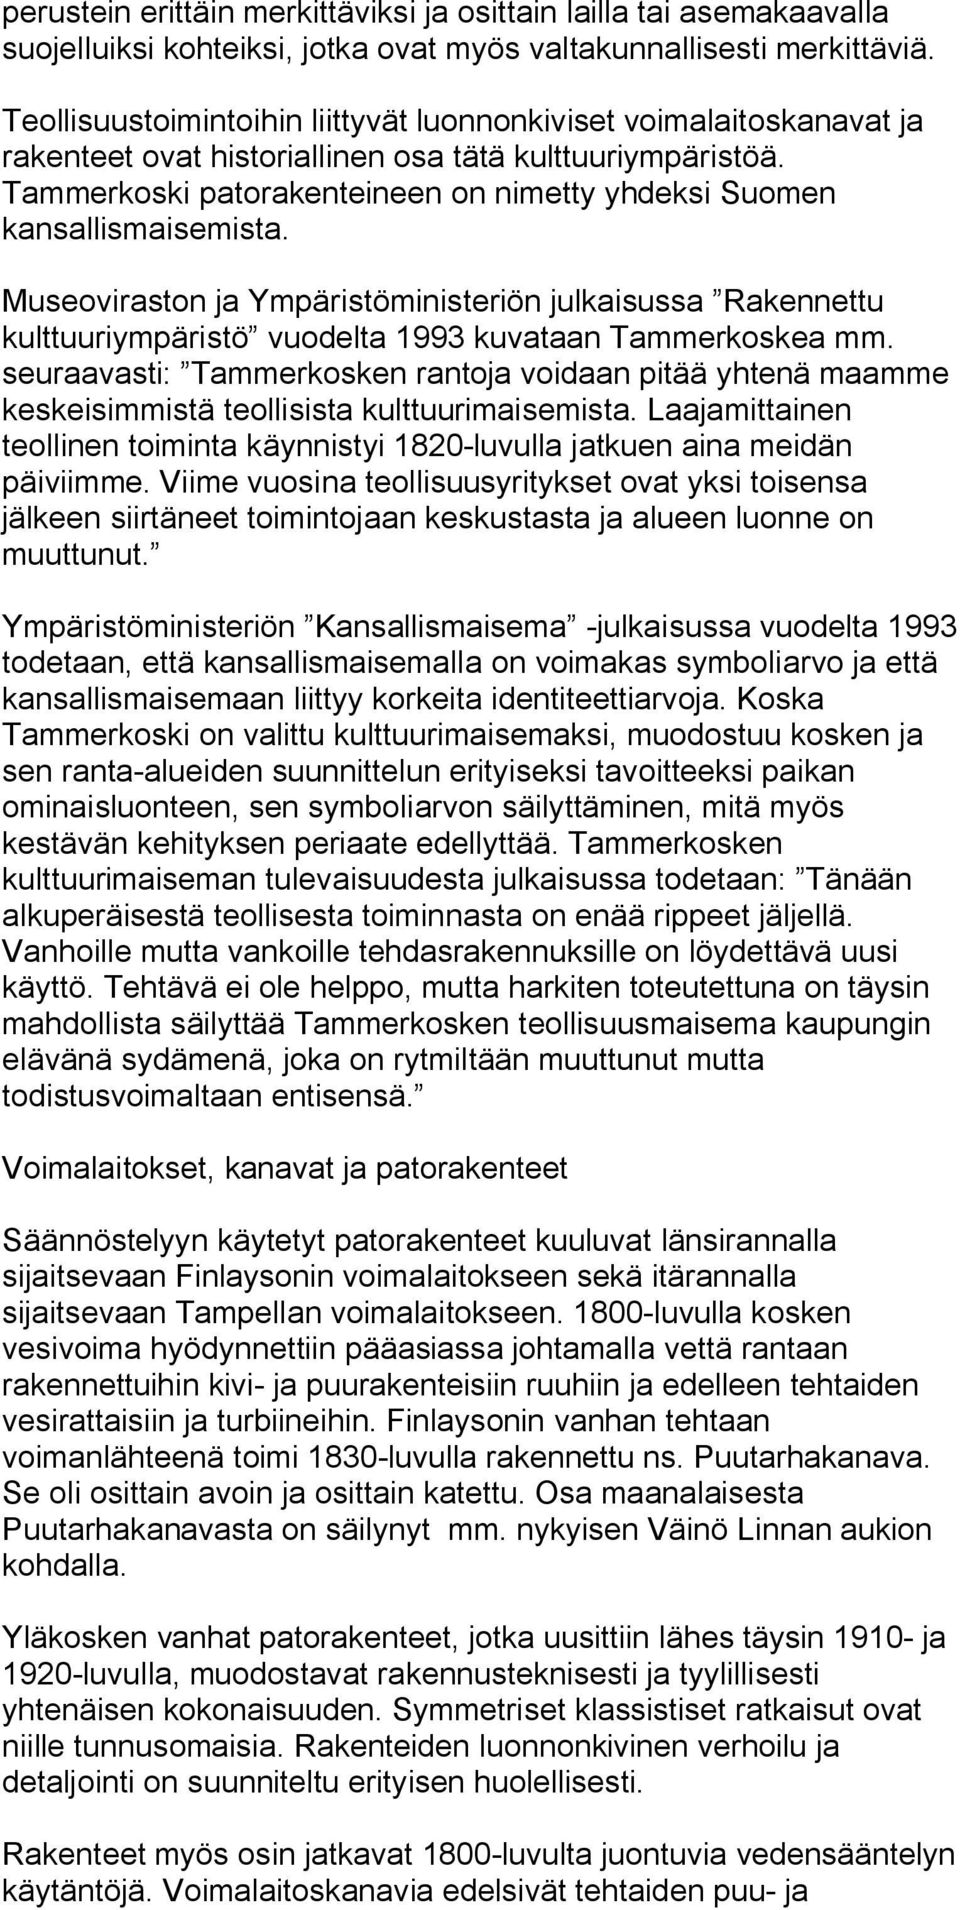 Tammerkoski patorakenteineen on nimetty yhdeksi Suomen kansallismaisemista. Museoviraston ja Ympäristöministeriön julkaisussa Rakennettu kulttuuriympäristö vuodelta 1993 kuvataan Tammerkoskea mm.